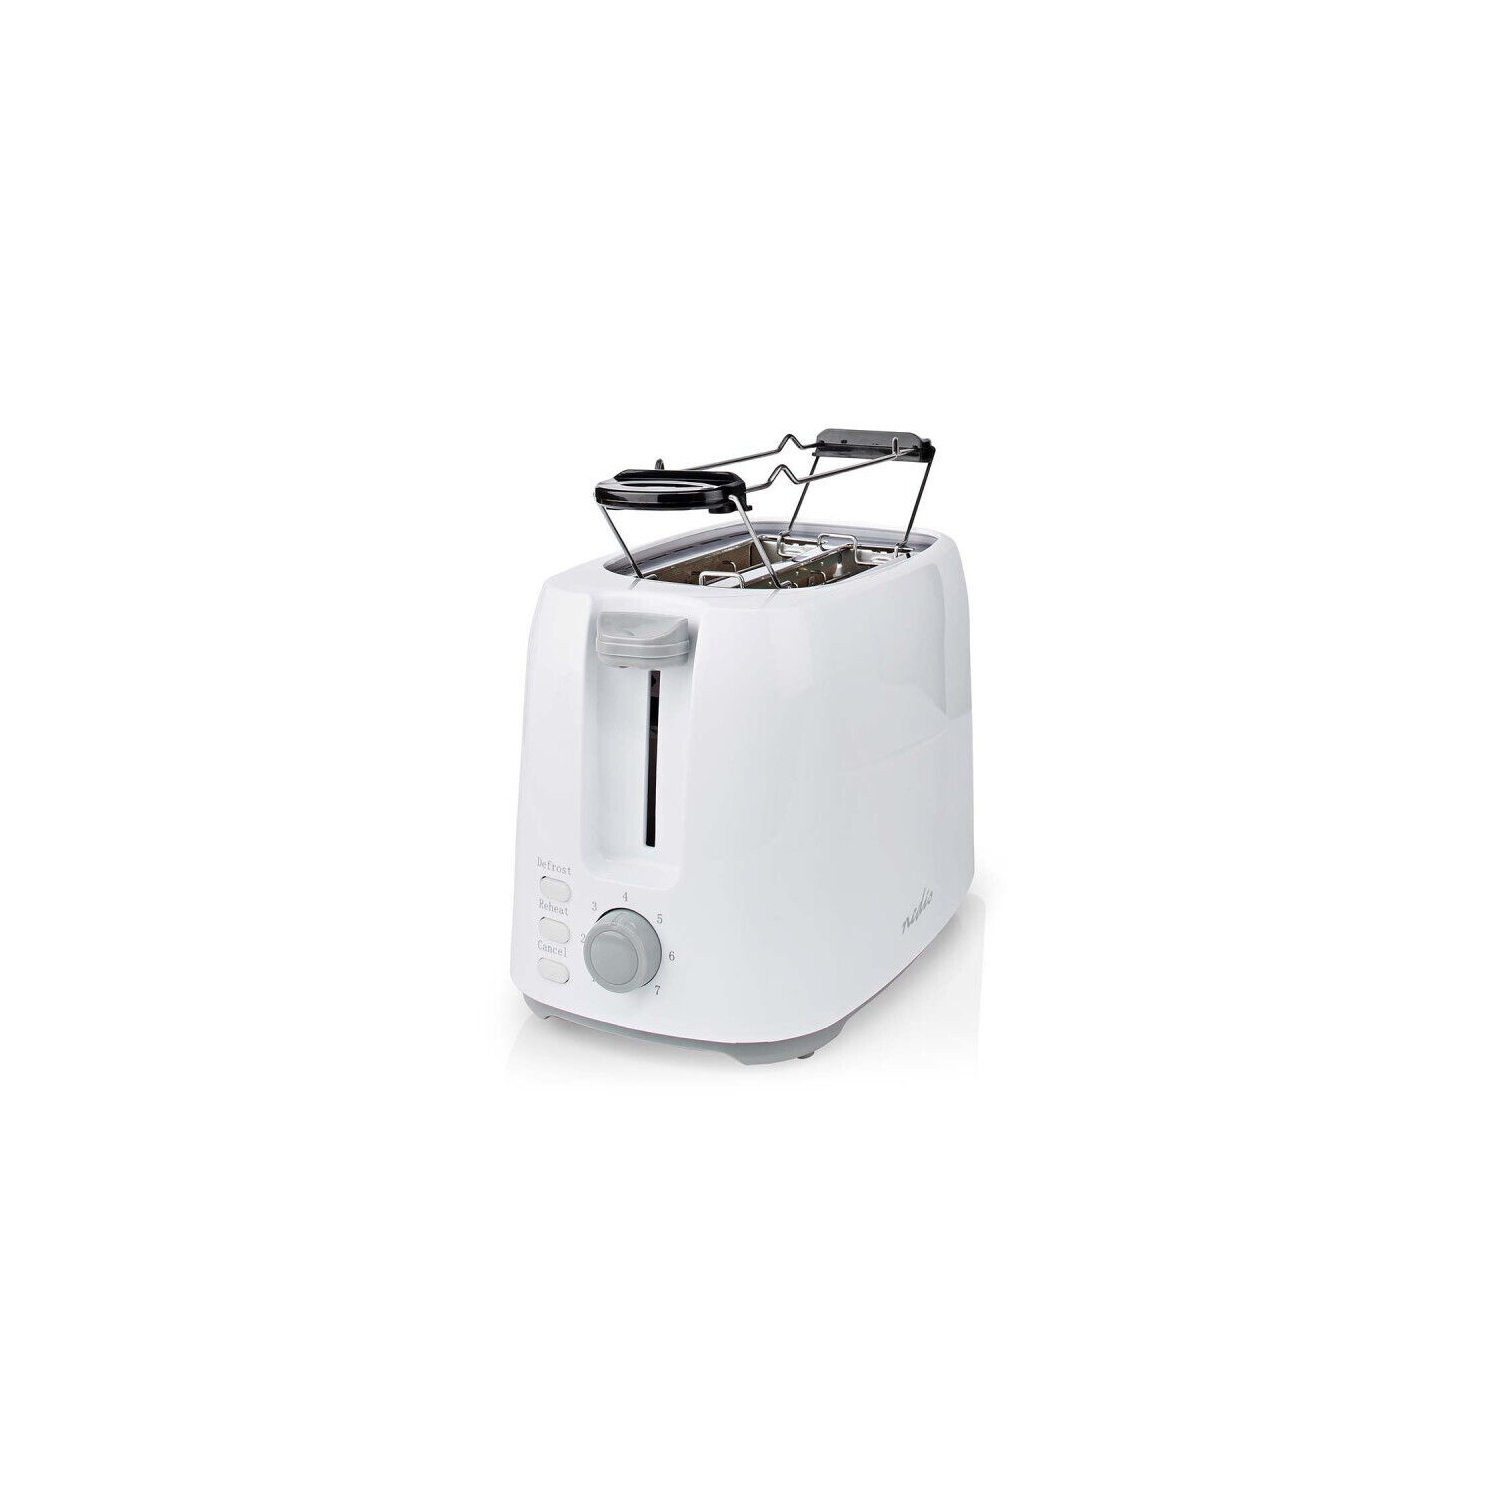 Grille-pain automatique Compact, 2 tranches, 6 niveaux de température, petite  taille, blanc, pour la maison